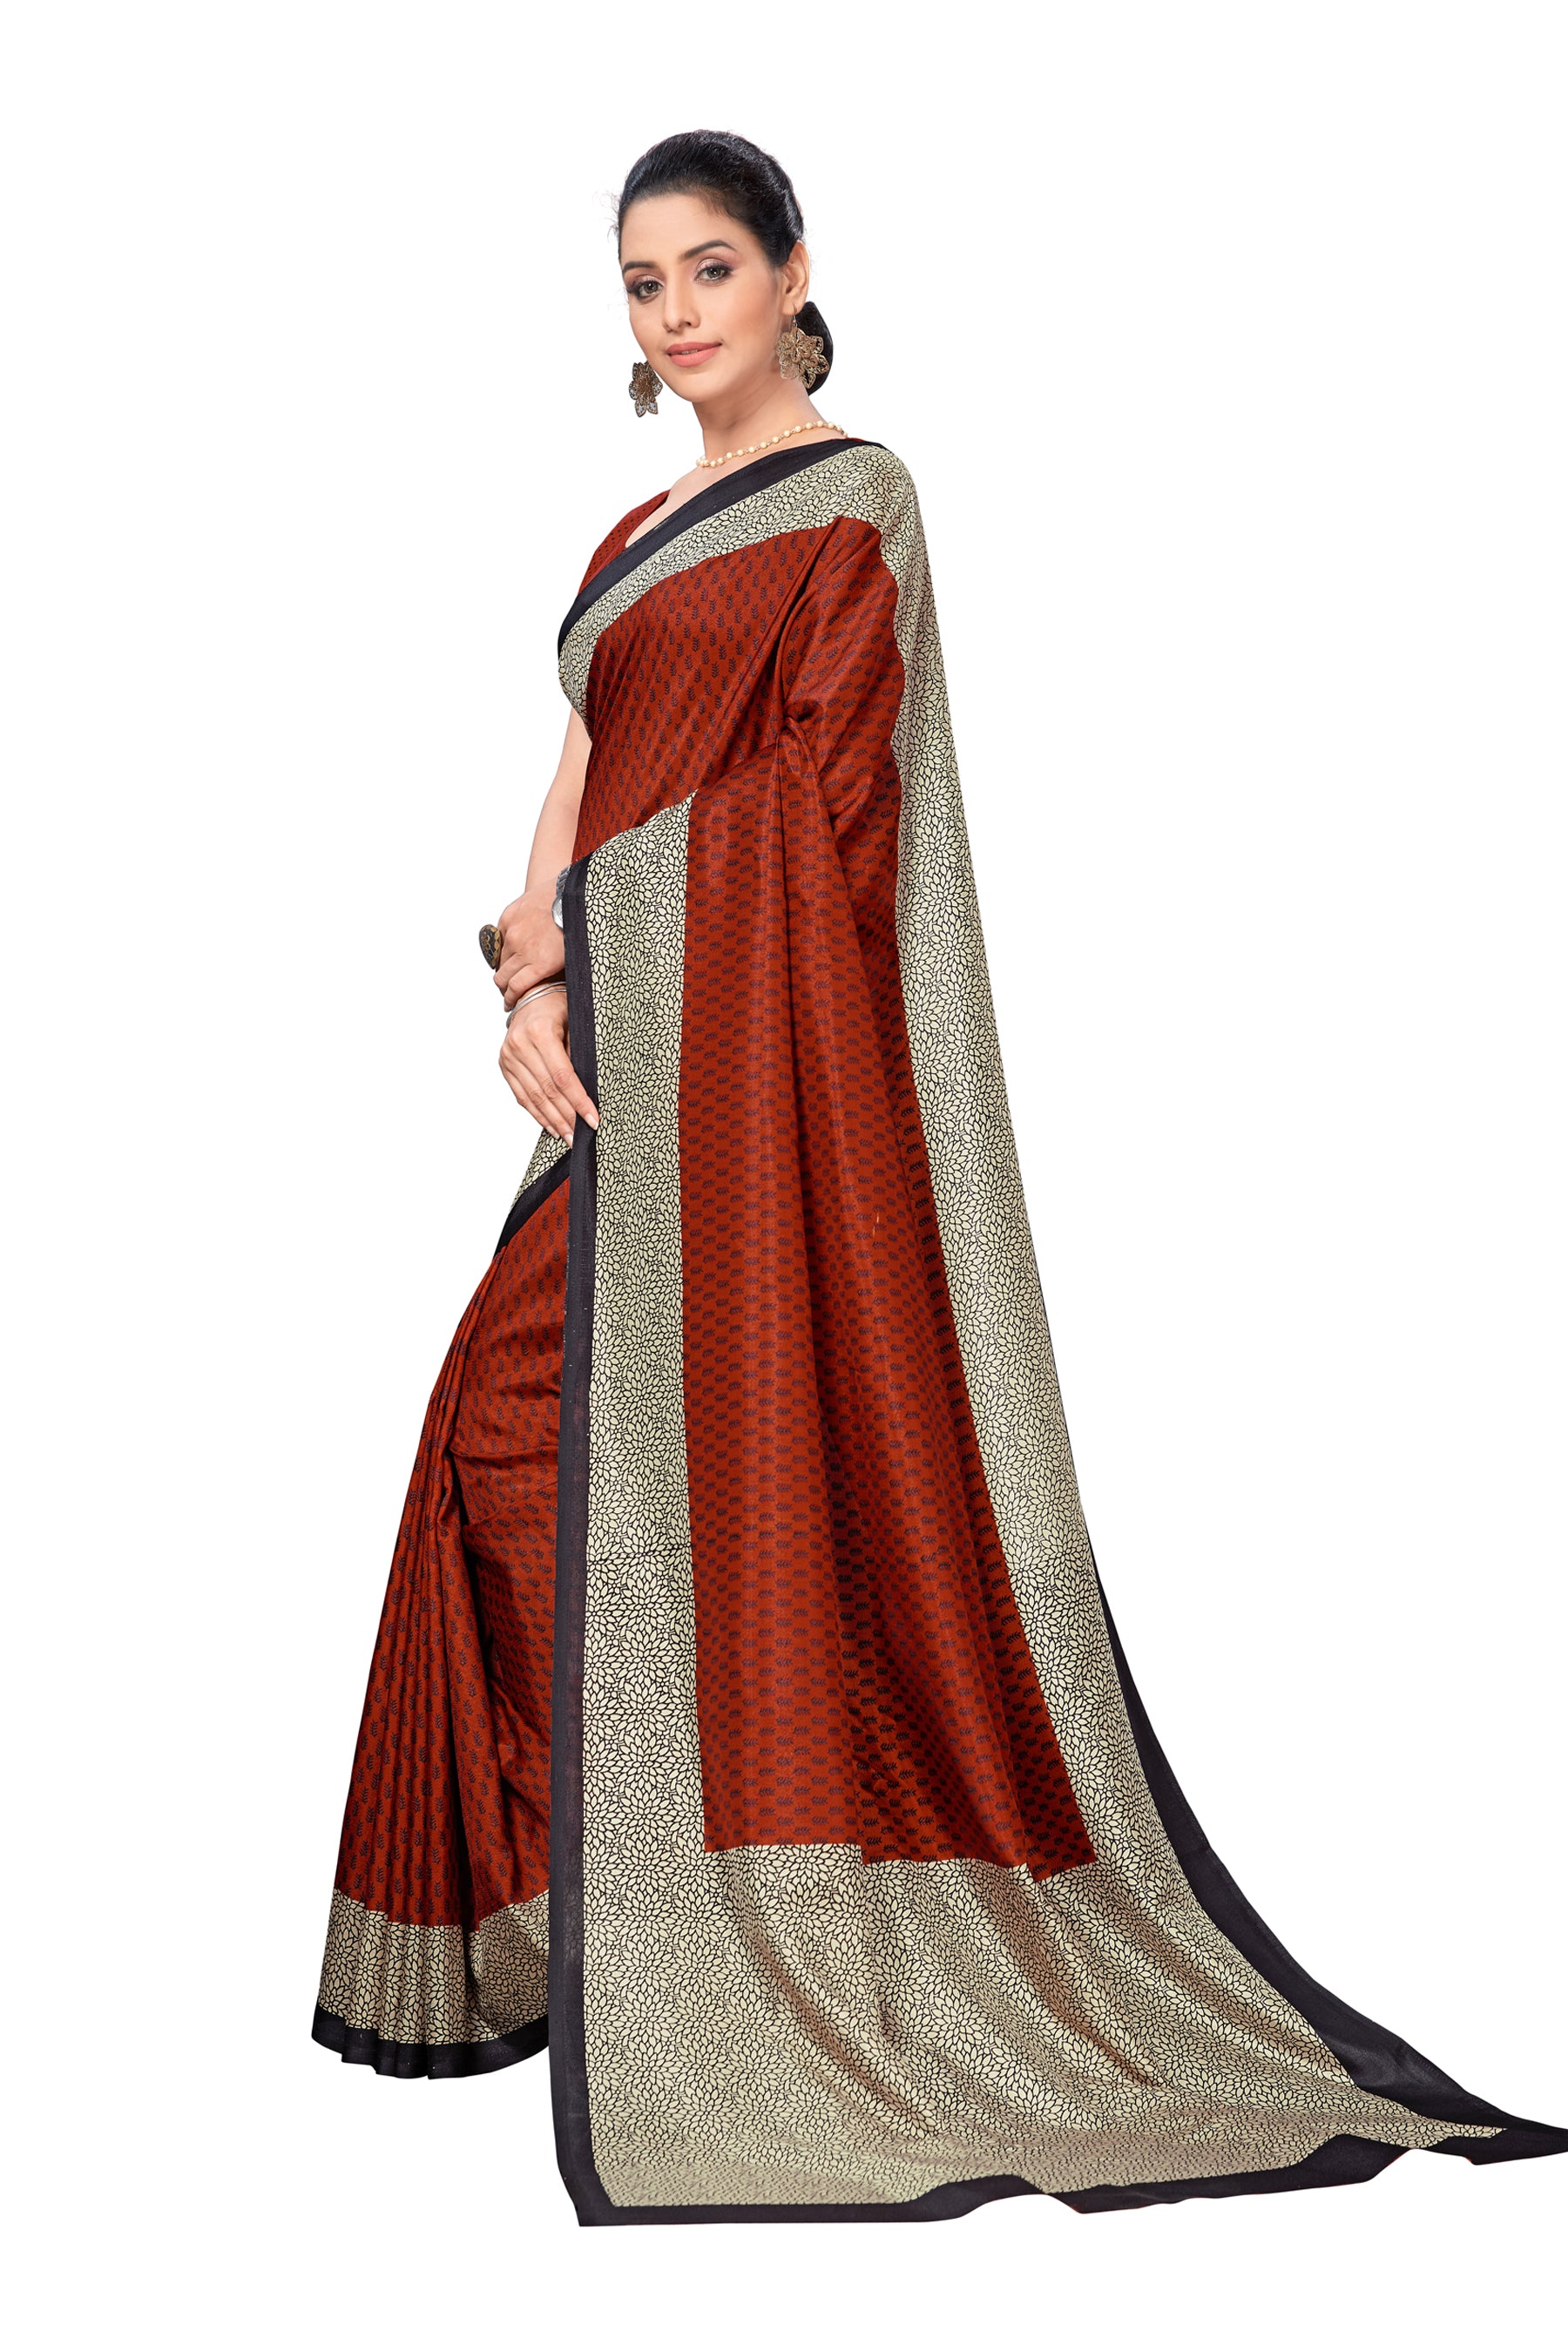 Vimla Women's Maroon Malgudi Art Silk Uniform Saree with Blouse (2112_Maroon)